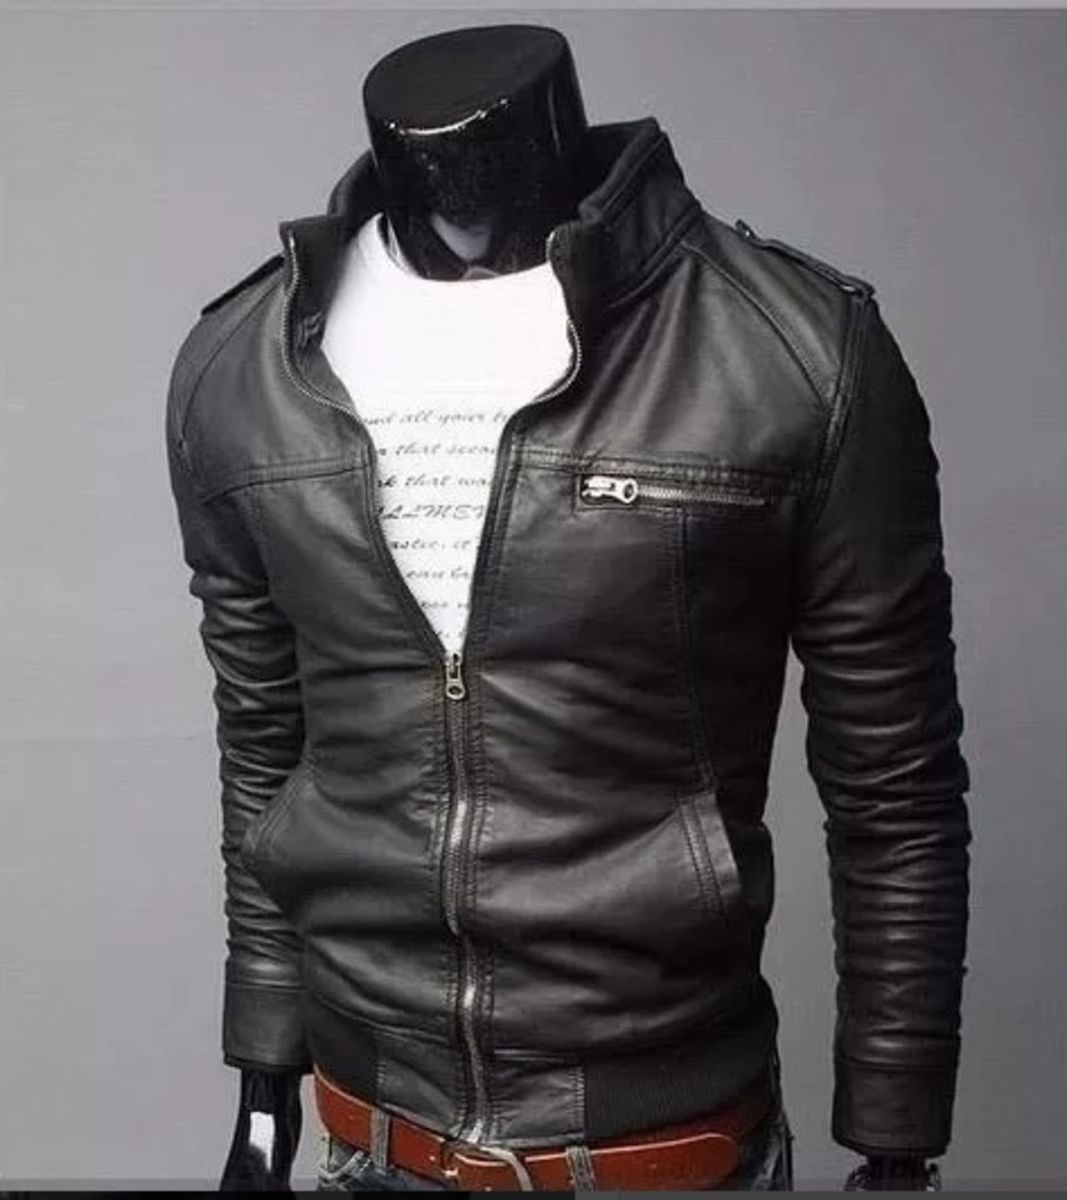 jaqueta de couro masculina preta